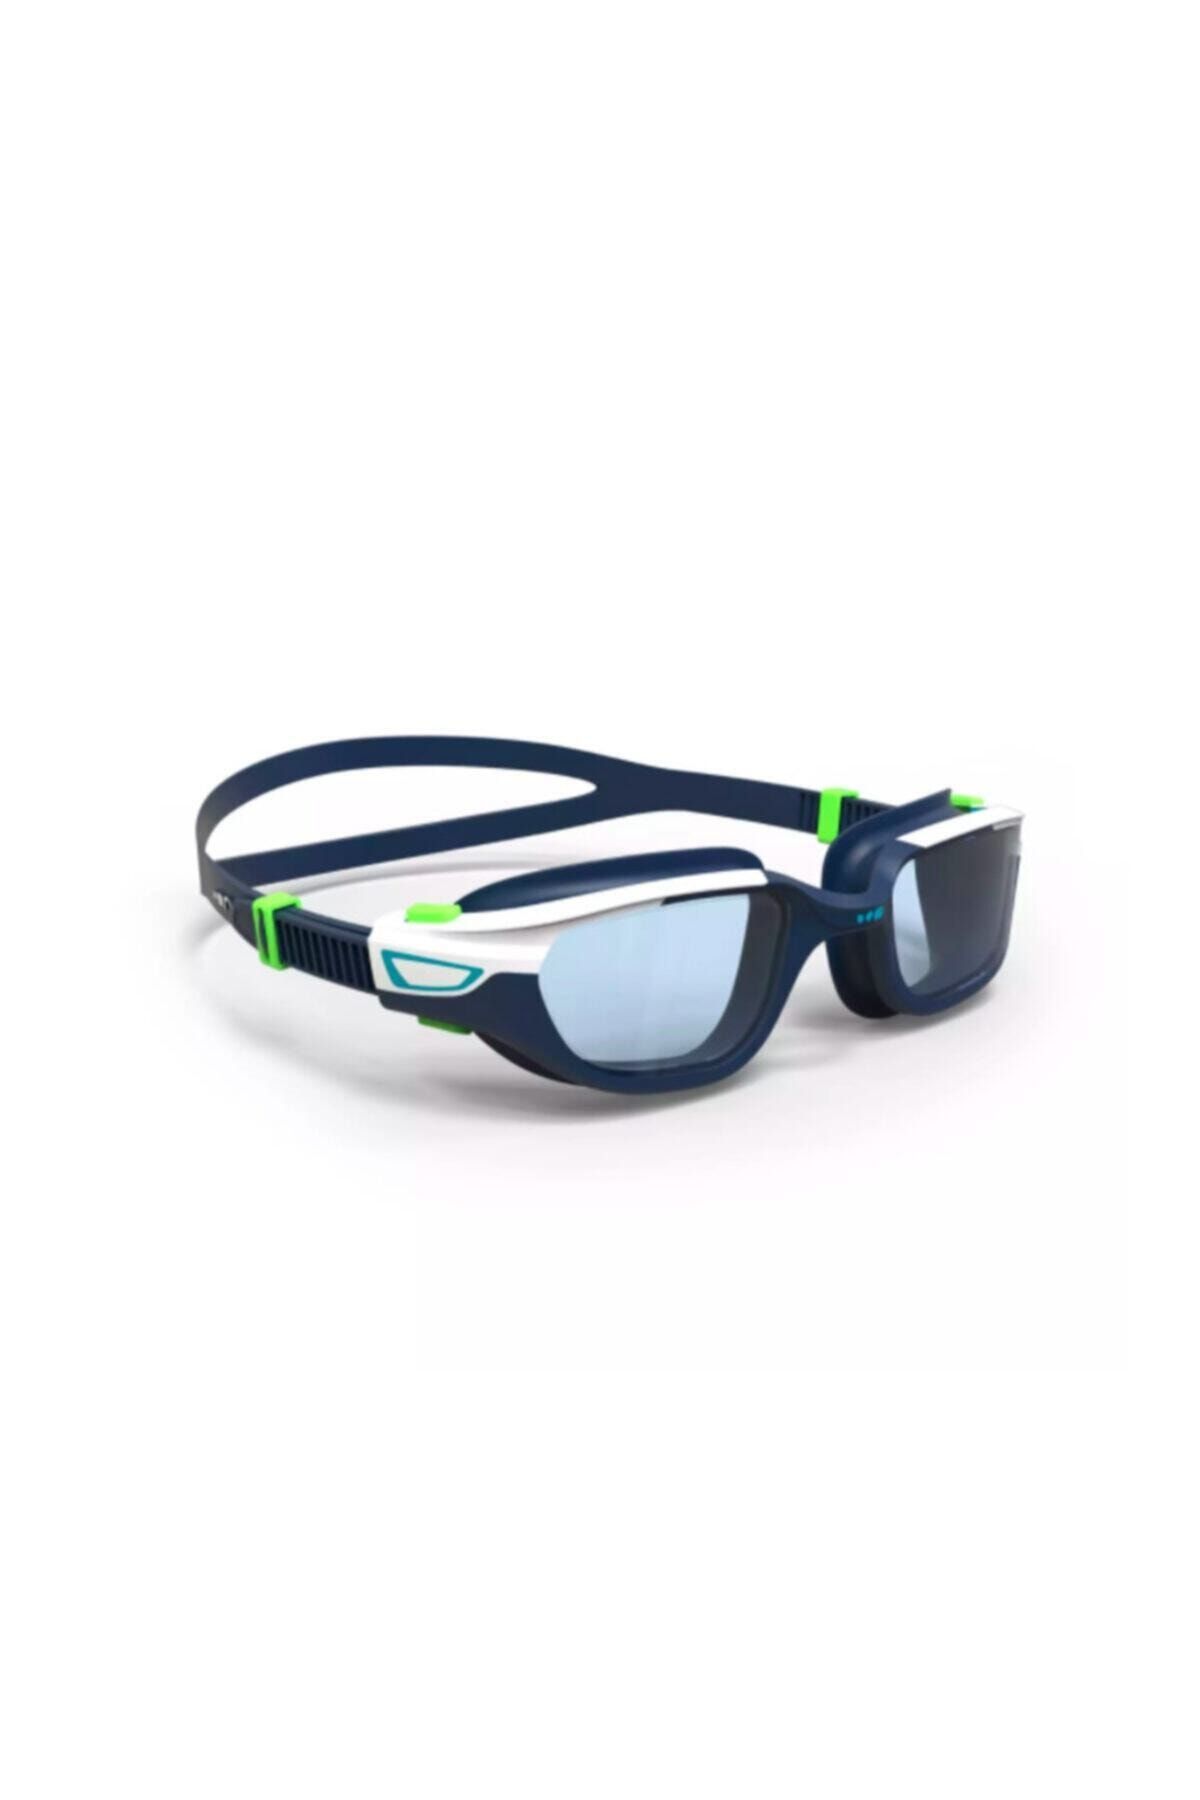 Decathlon - Yüzücü Gözlüğü Yetişkin Deniz Gözlüğü Beyaz Mavi Şeffaf Camlar L Boy Spırıt